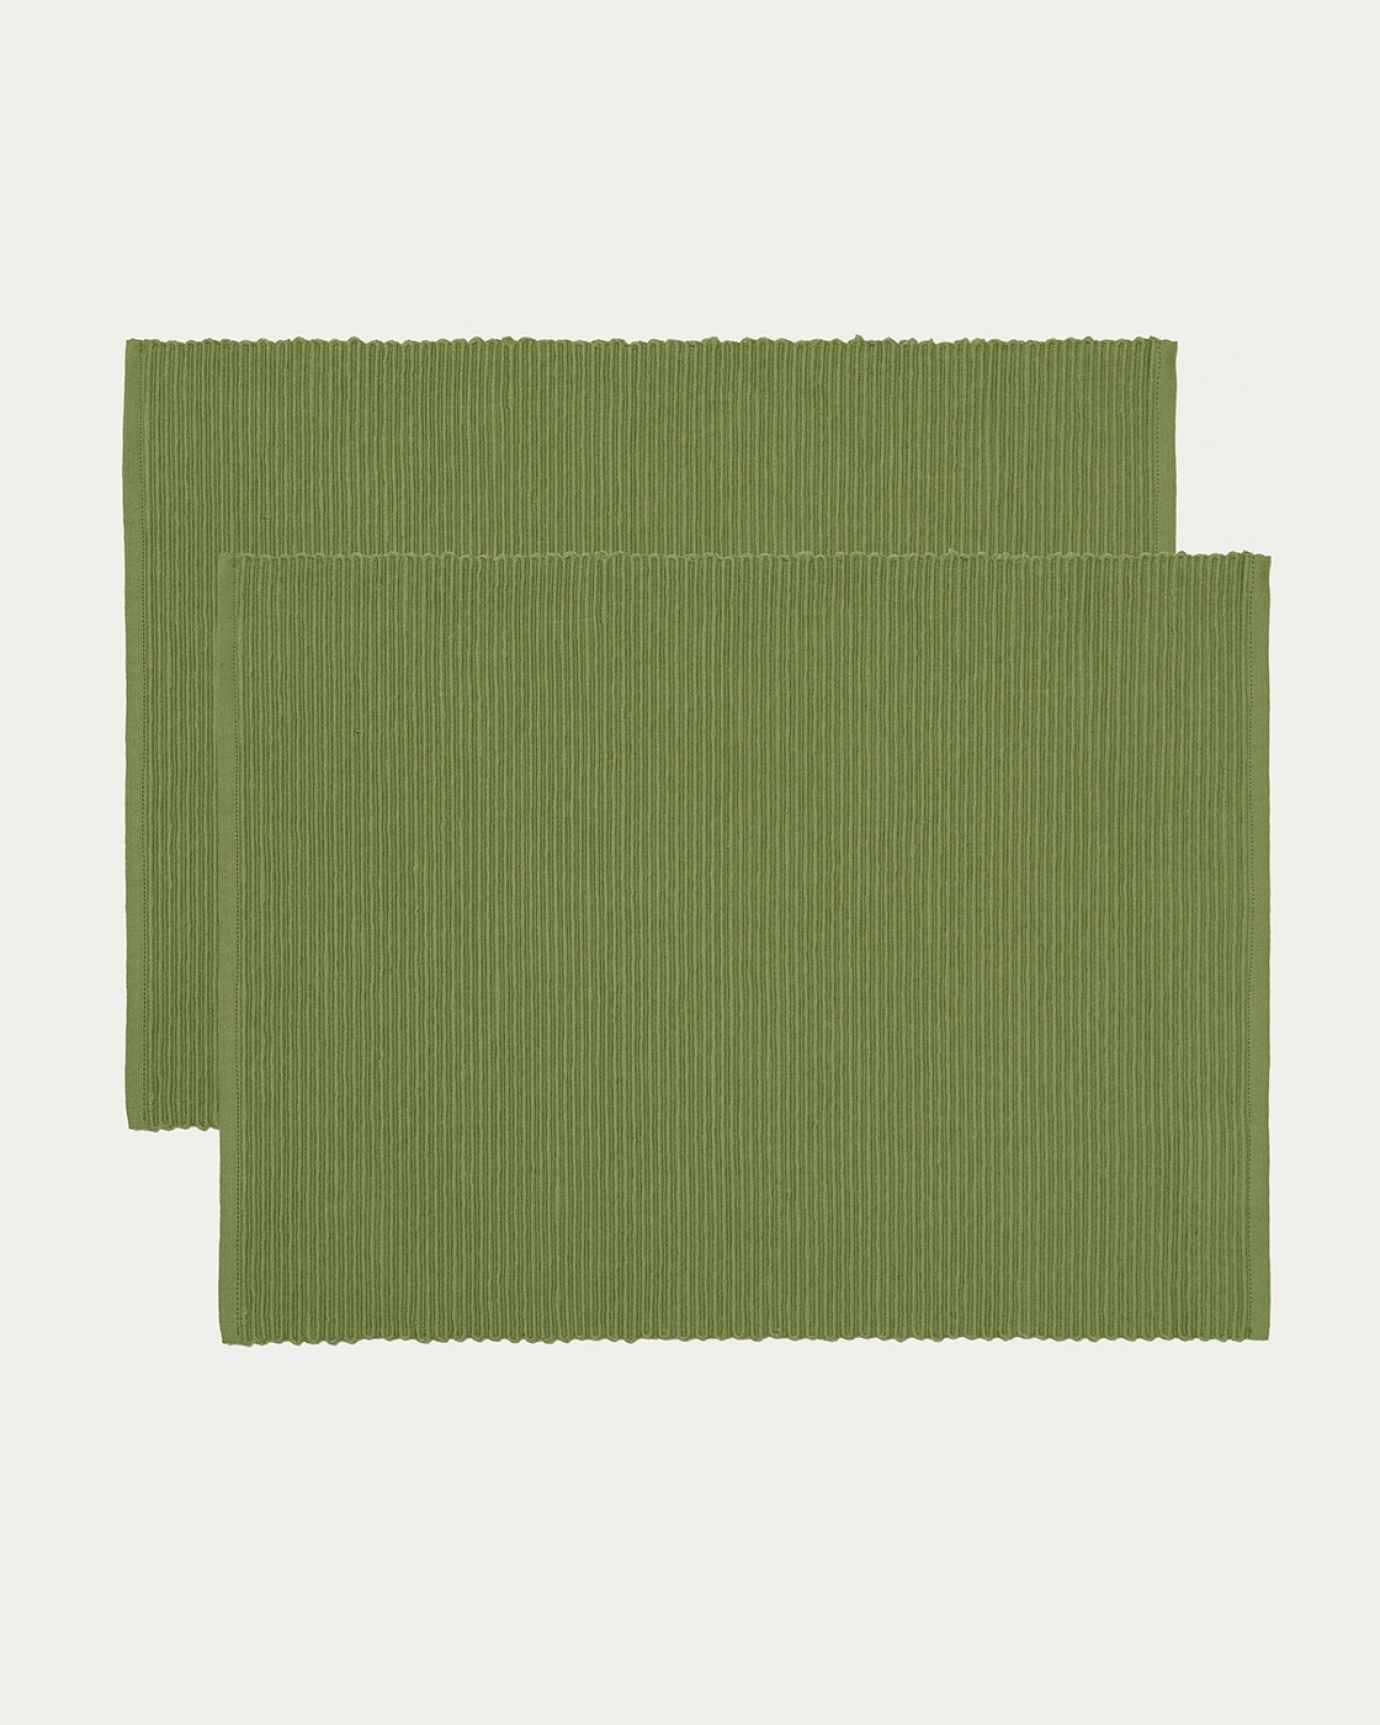 Immagine prodotto verde muschio tovaglietta UNI in morbido cotone a costine di qualità di LINUM DESIGN. Dimensioni 35x46 cm e venduto in 2-pezzi.